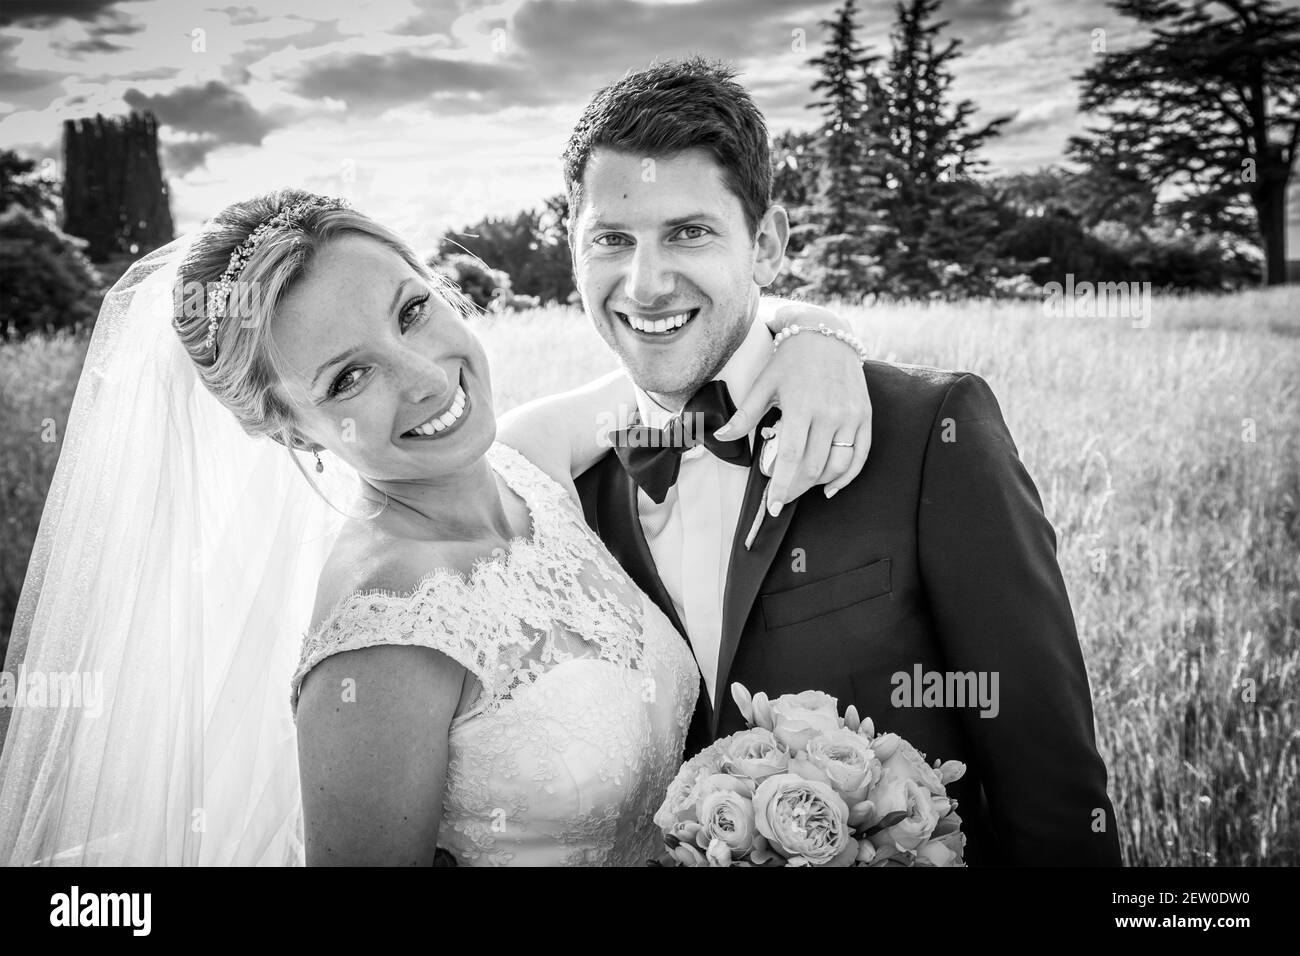 Braut und Bräutigam sehen sehr glücklich und verliebt aus Ihr Hochzeitstag Stockfoto